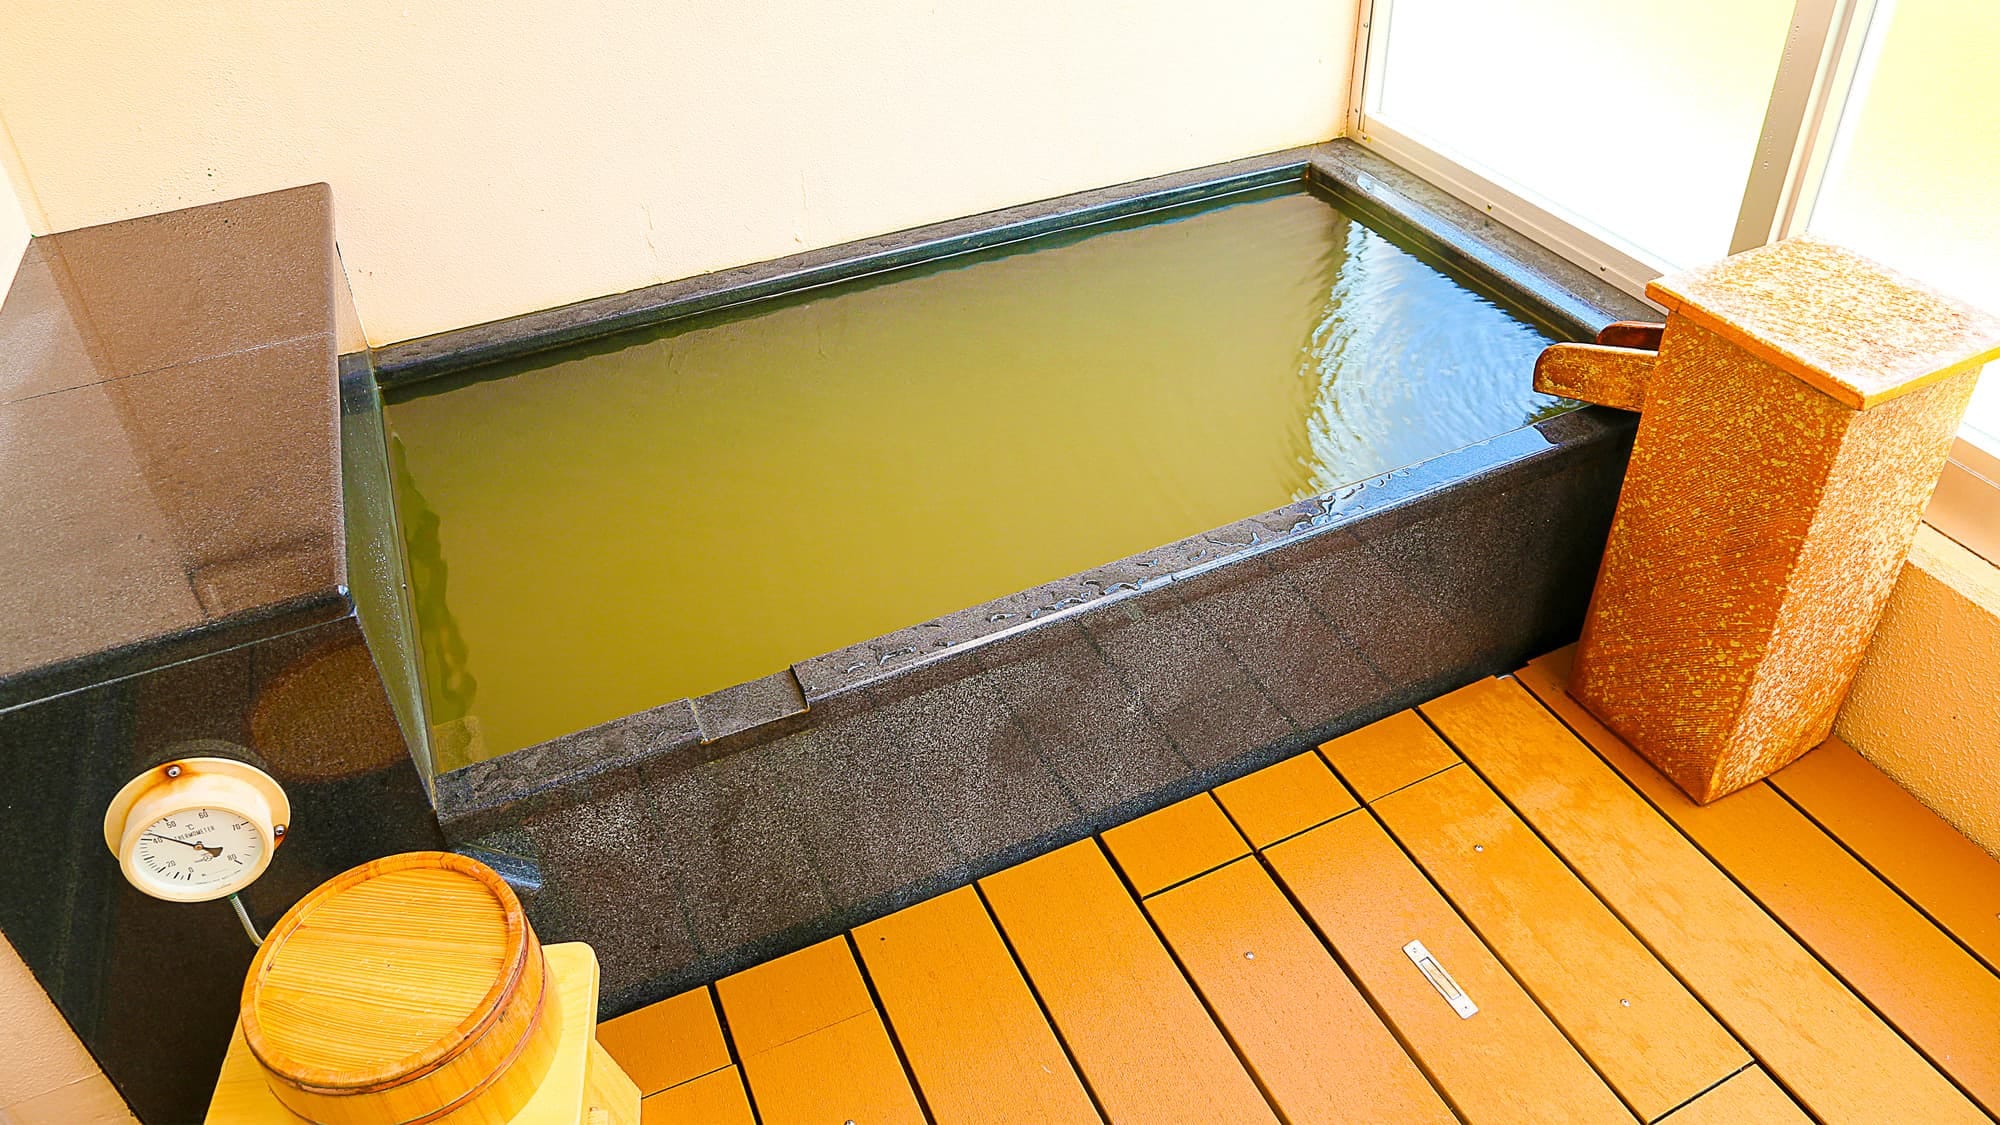 [Kogane no Yukan] ห้องสไตล์ญี่ปุ่นพร้อมน้ำพุร้อน / ห้องพักที่คุณสามารถเพลิดเพลินกับน้ำพุร้อนคุณภาพเดียวกับน้ำพุร้อนของ Apeman ที่ไหลตรงจากแหล่งกำเนิด